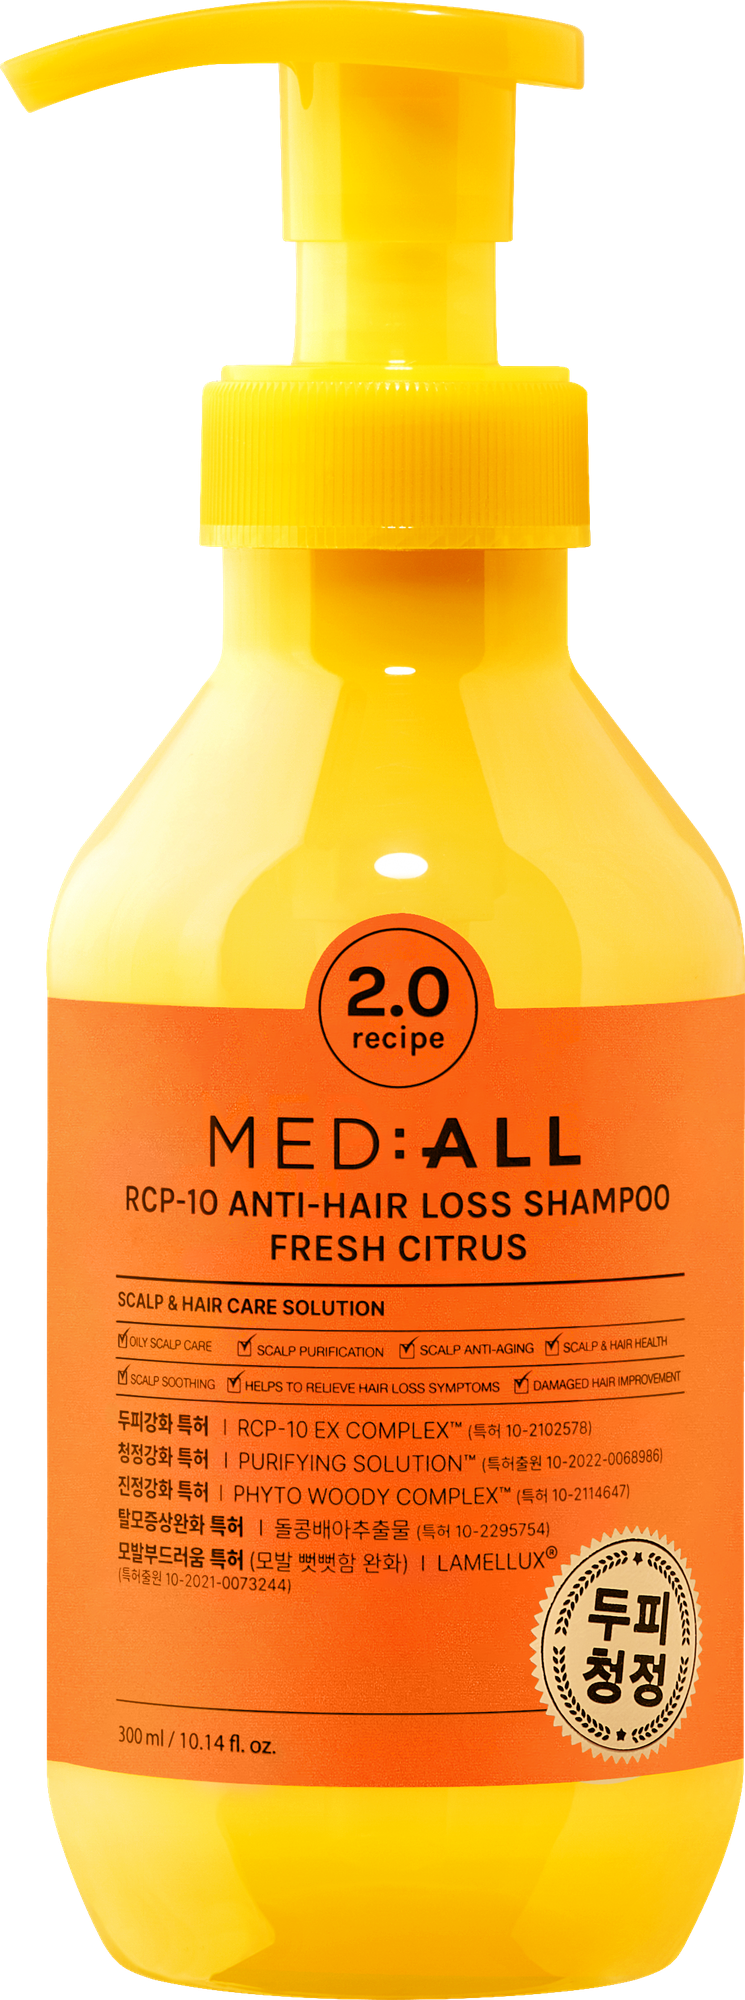 MED:ALL Шампунь RCP-10 для восстановления роста волос Свежий цитрус, 300 мл, 